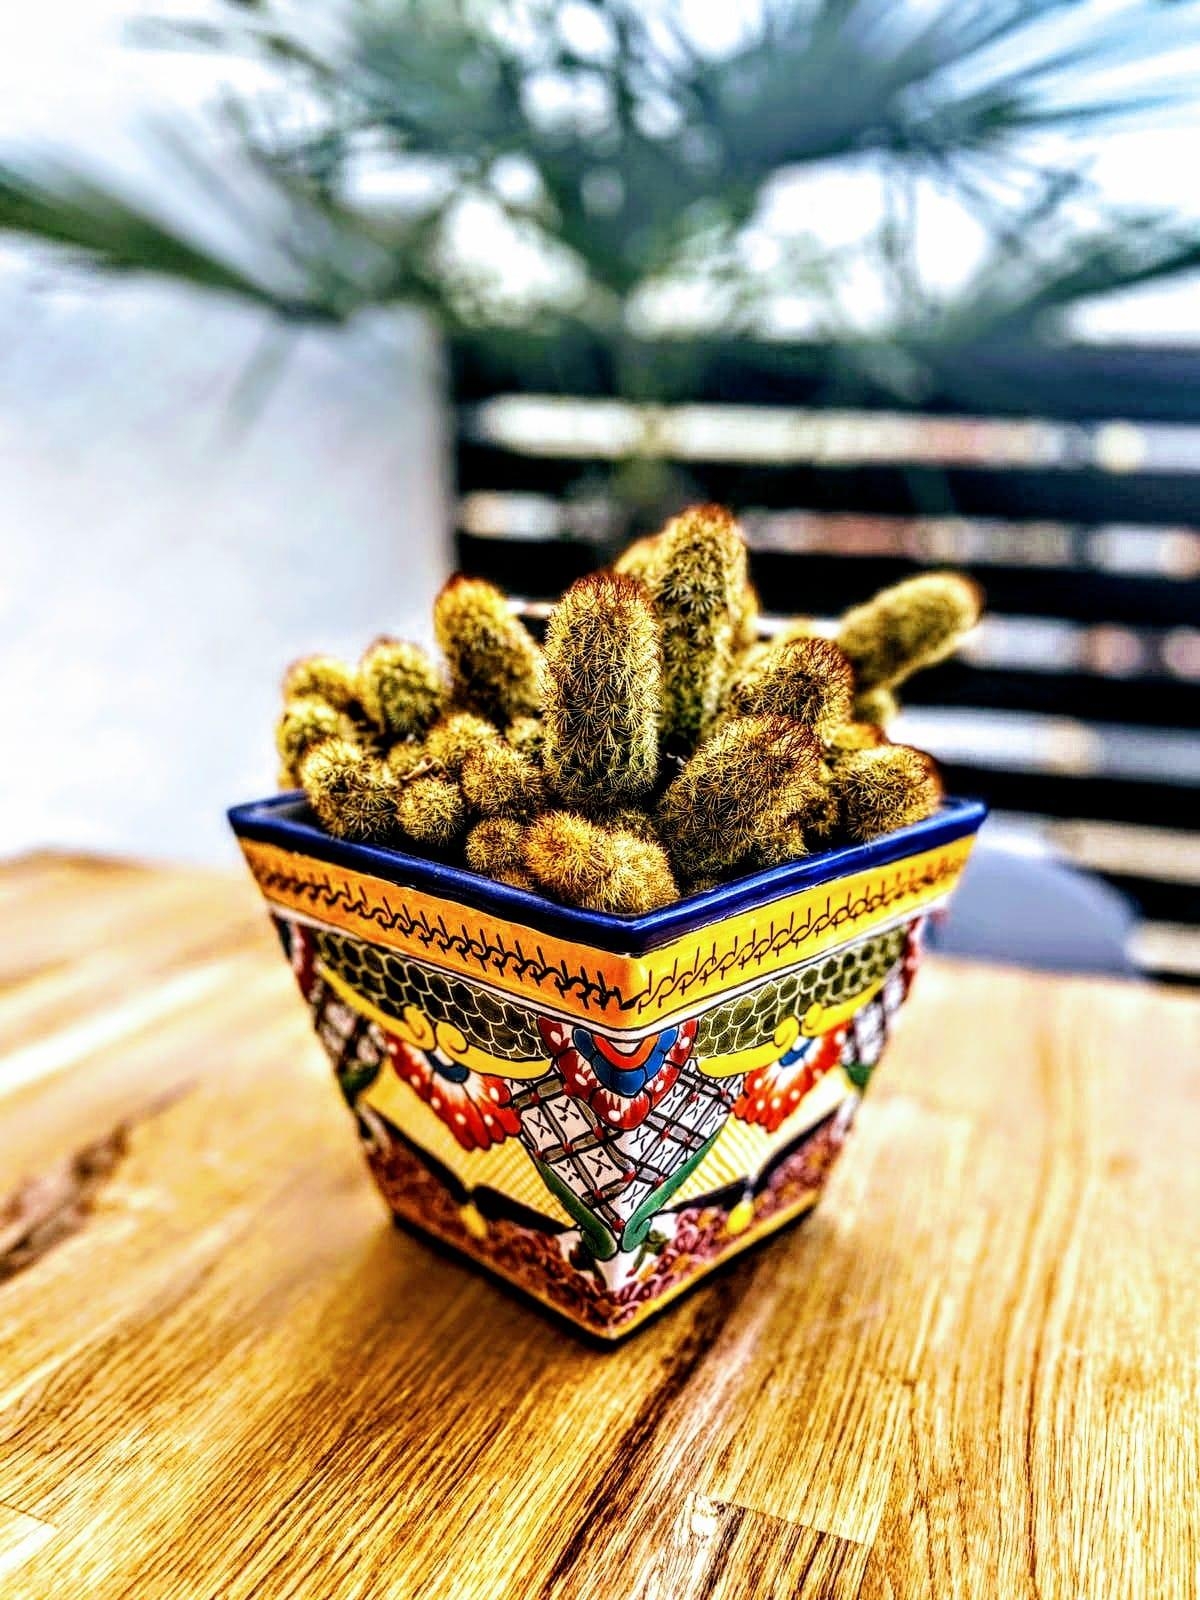 #Kaktus #kaktusliebe #Blumentopf #handmade #deko #balkonien #Balkon #tischdeko